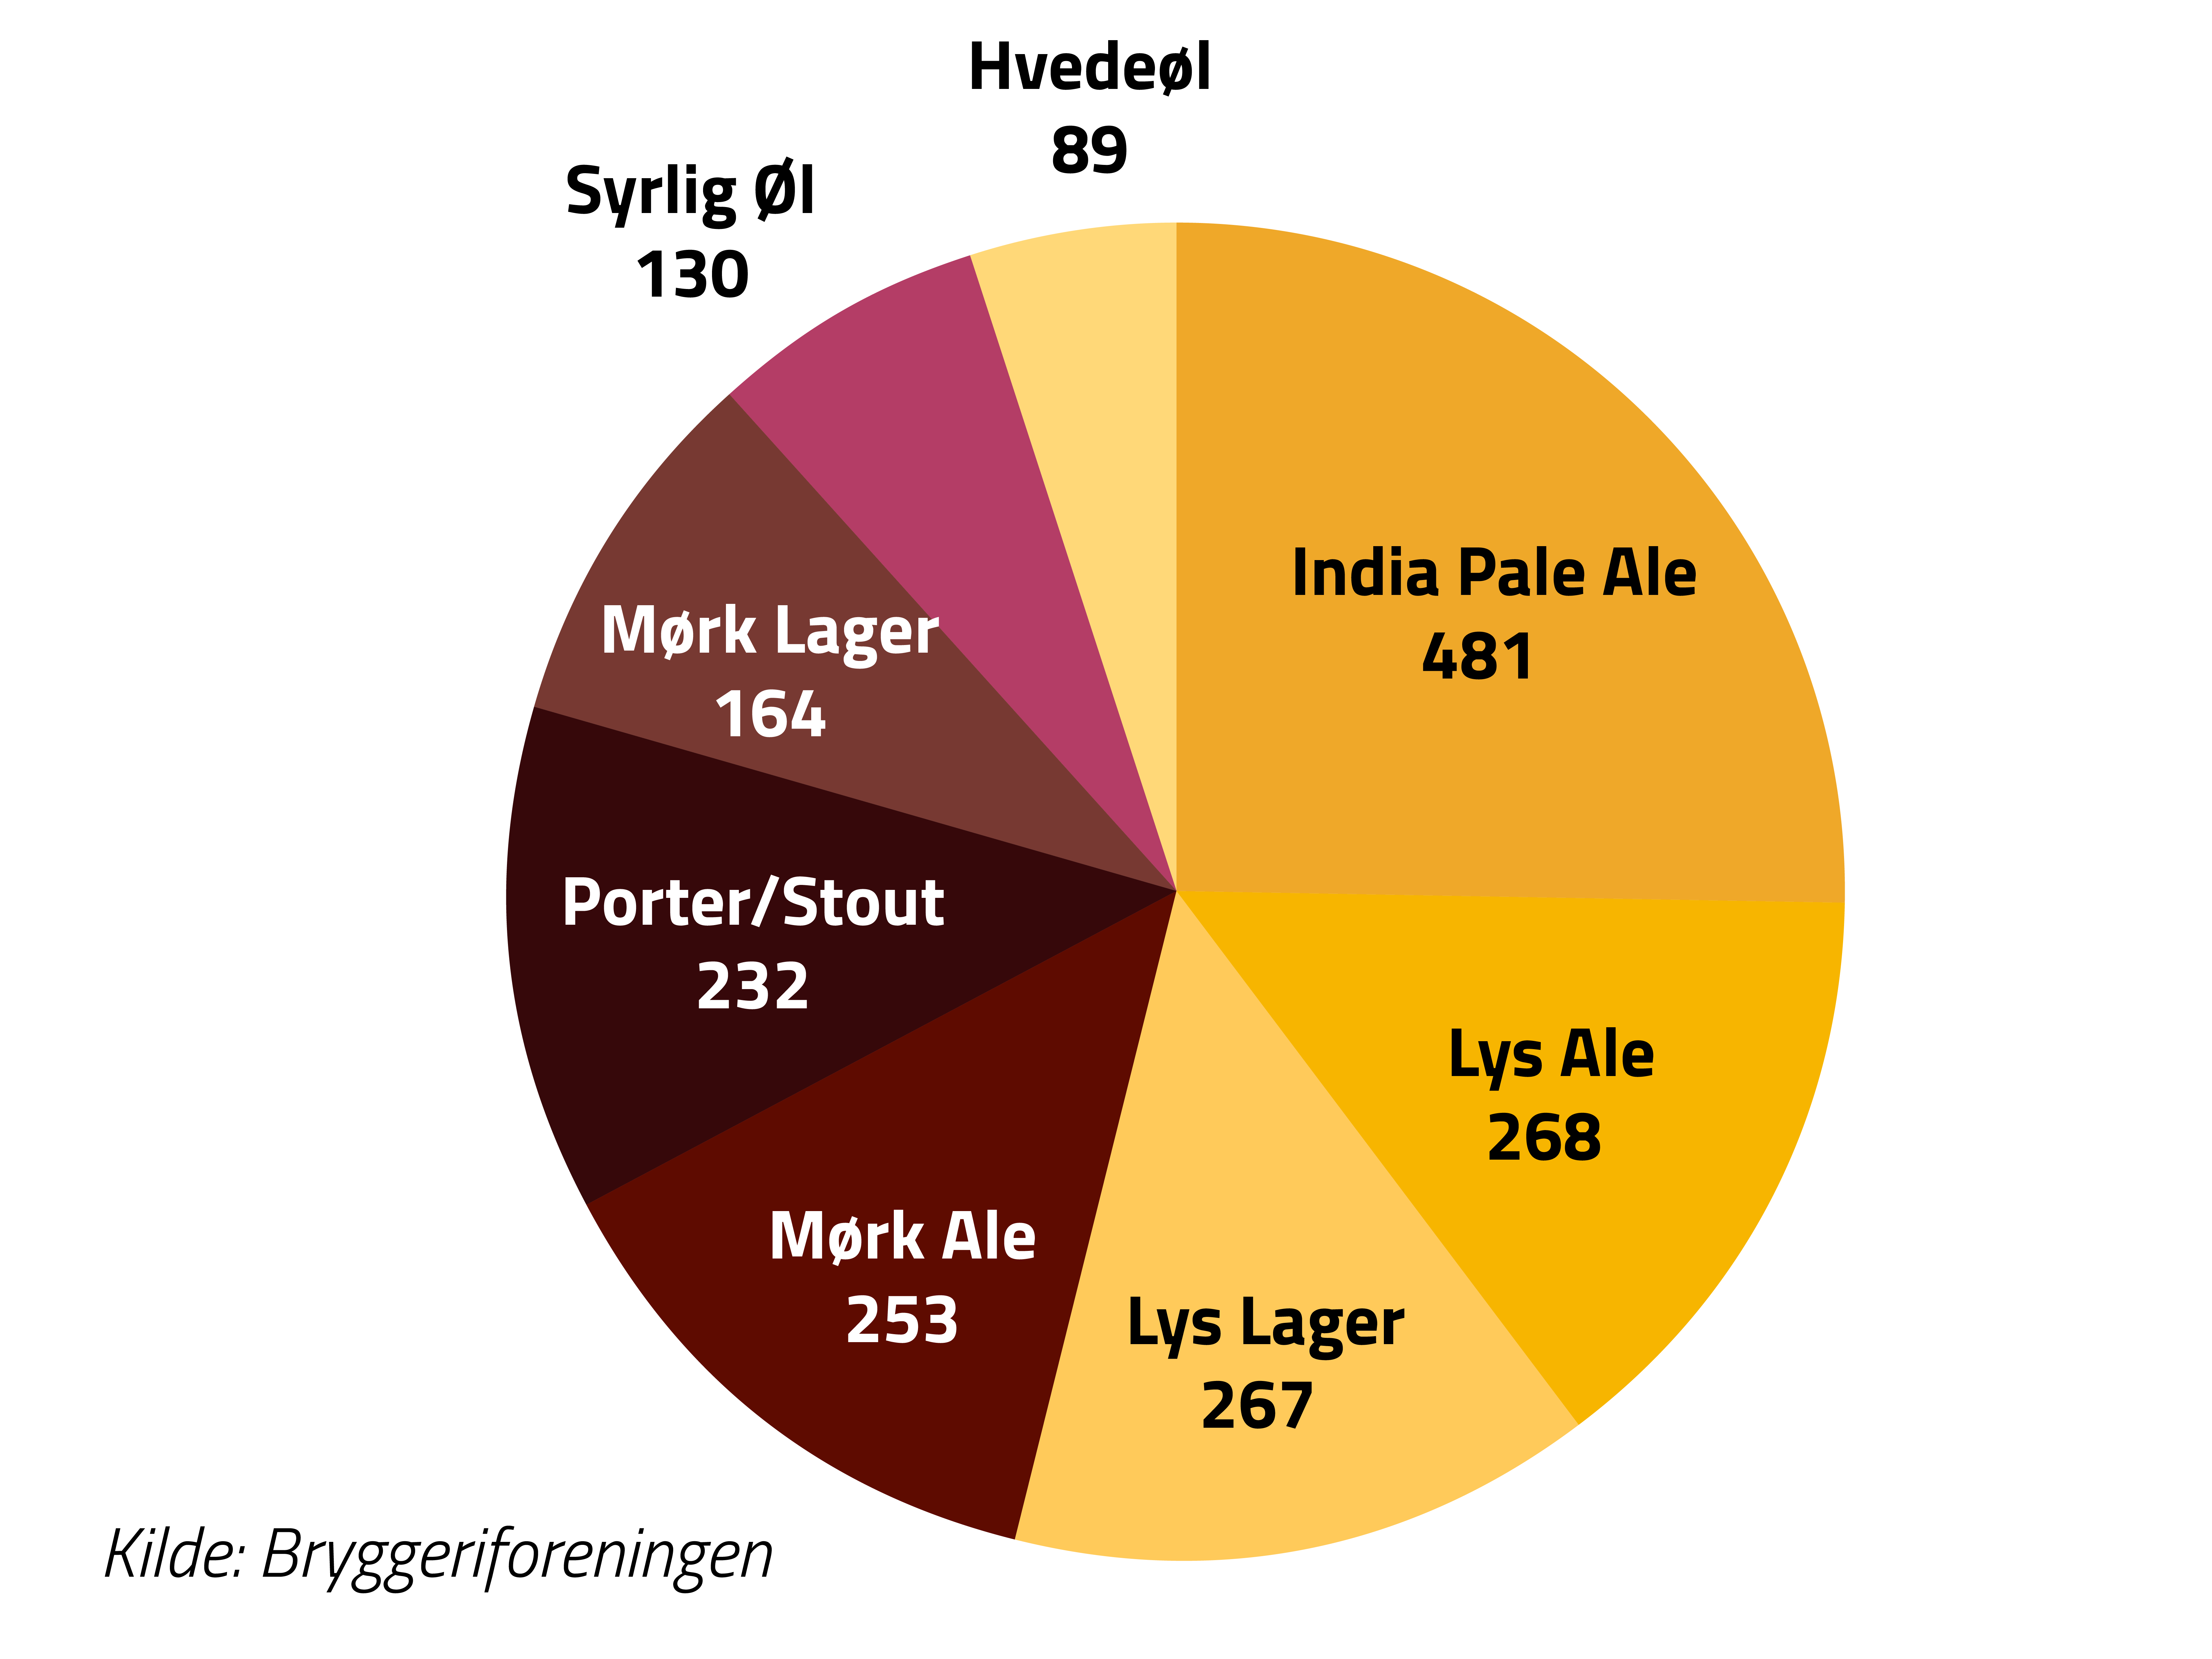 Graf over fordelingen af øltyperne produceret af bryggeriforeningens medlemmer. Den humleflydte Øl India Pale Ale